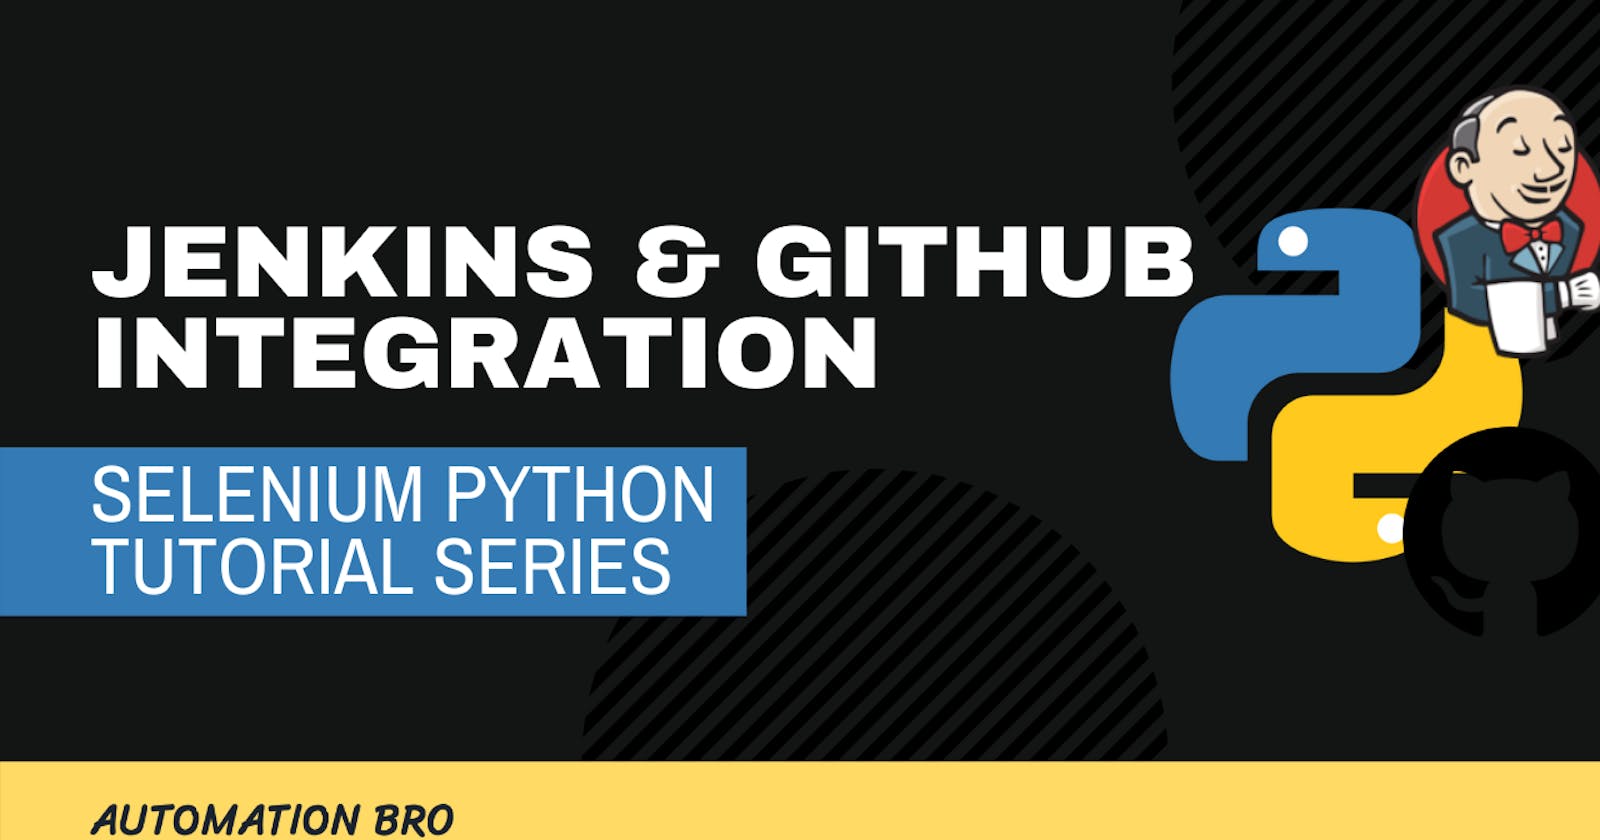 Jenkins & GitHub Integration with Selenium Python